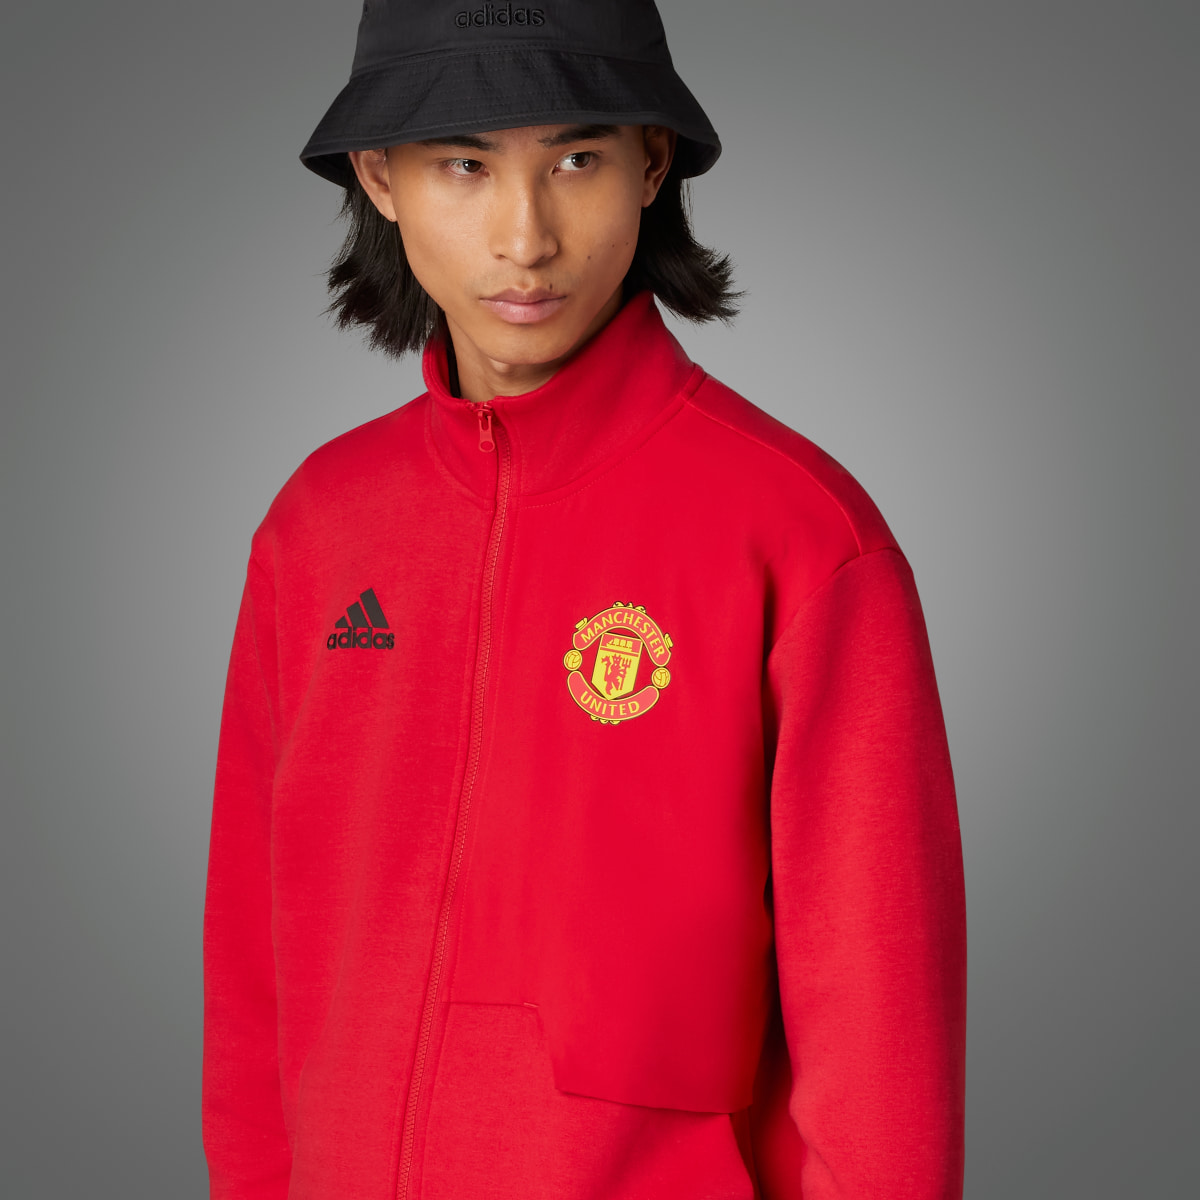 Adidas Manchester United Anthem Jacket. 8